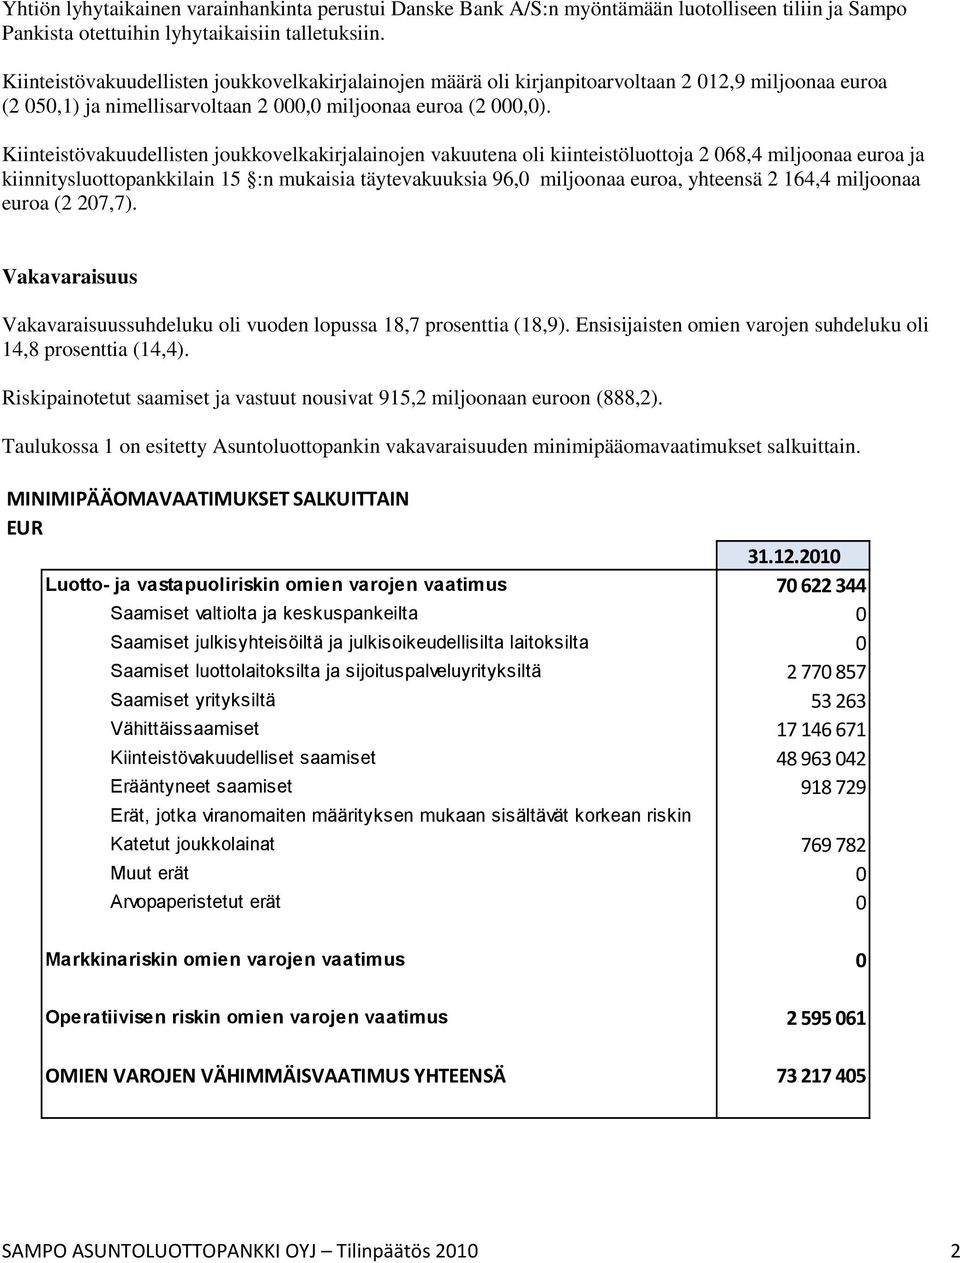 Kiinteistövakuudellisten joukkovelkakirjalainojen vakuutena oli kiinteistöluottoja 2 068,4 miljoonaa euroa ja kiinnitysluottopankkilain 15 :n mukaisia täytevakuuksia 96,0 miljoonaa euroa, yhteensä 2